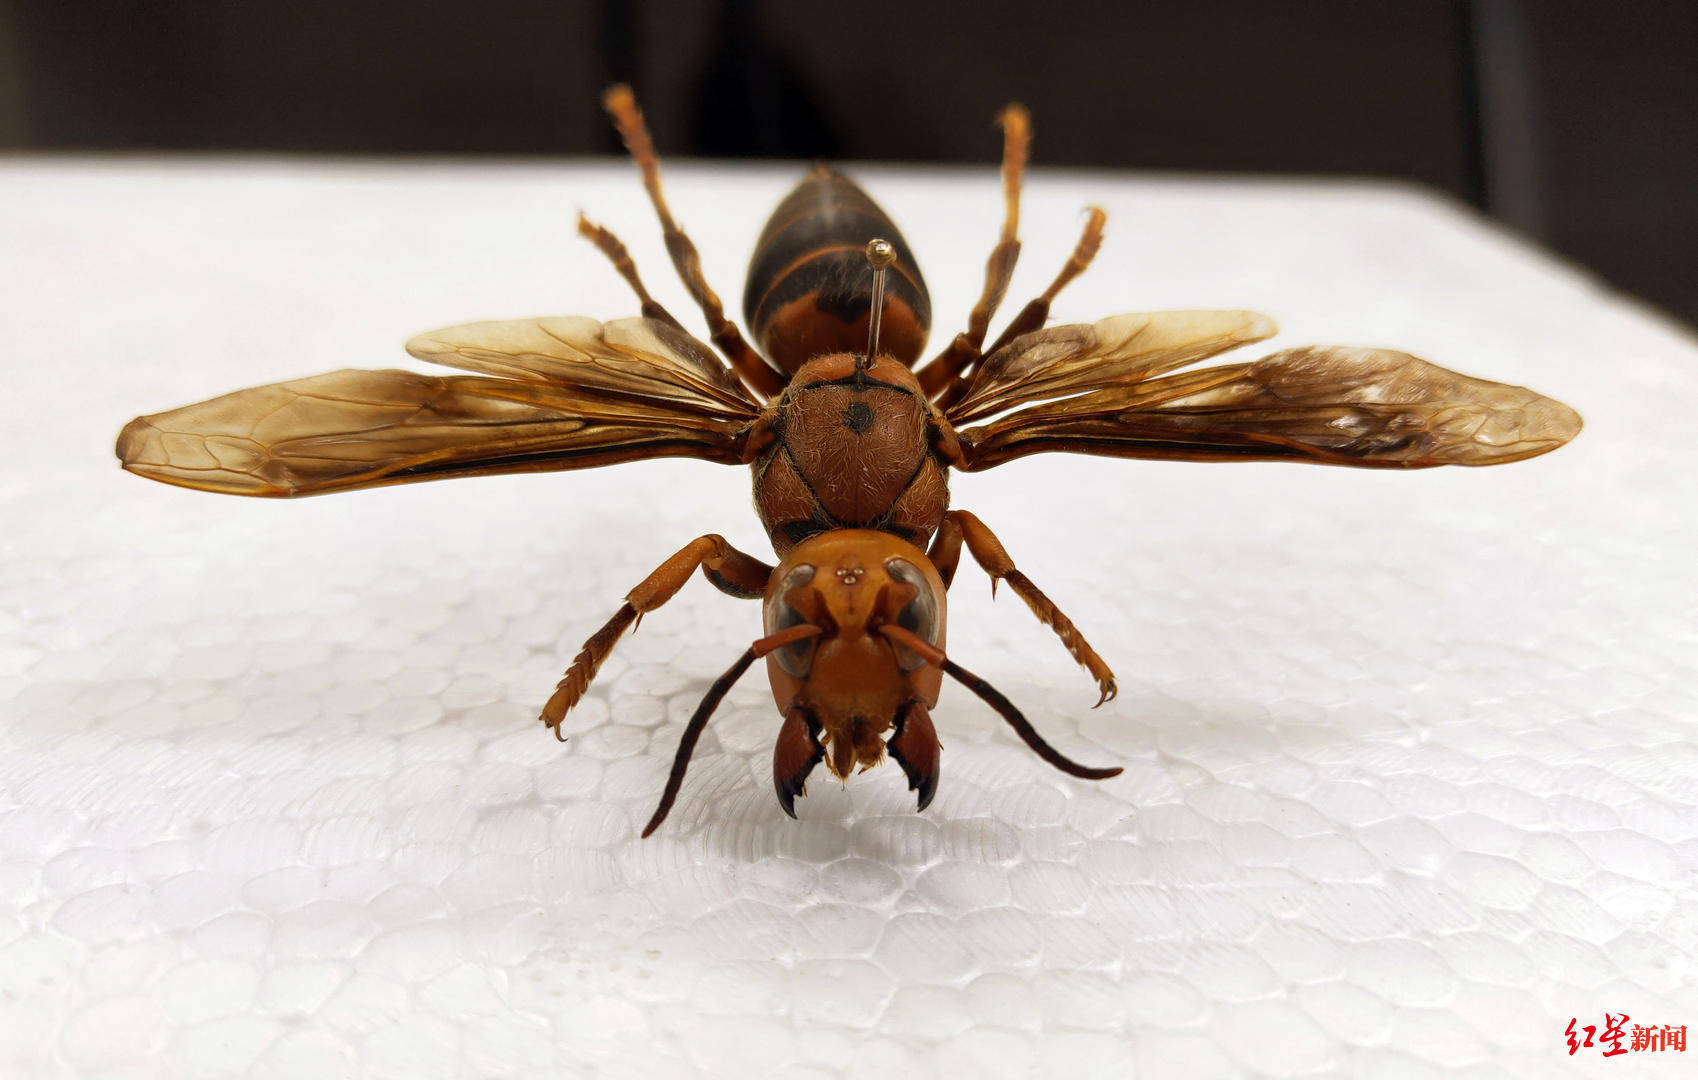 世界最大胡蜂是日本大黄蜂?成都这家昆虫博物馆"笑而不语"